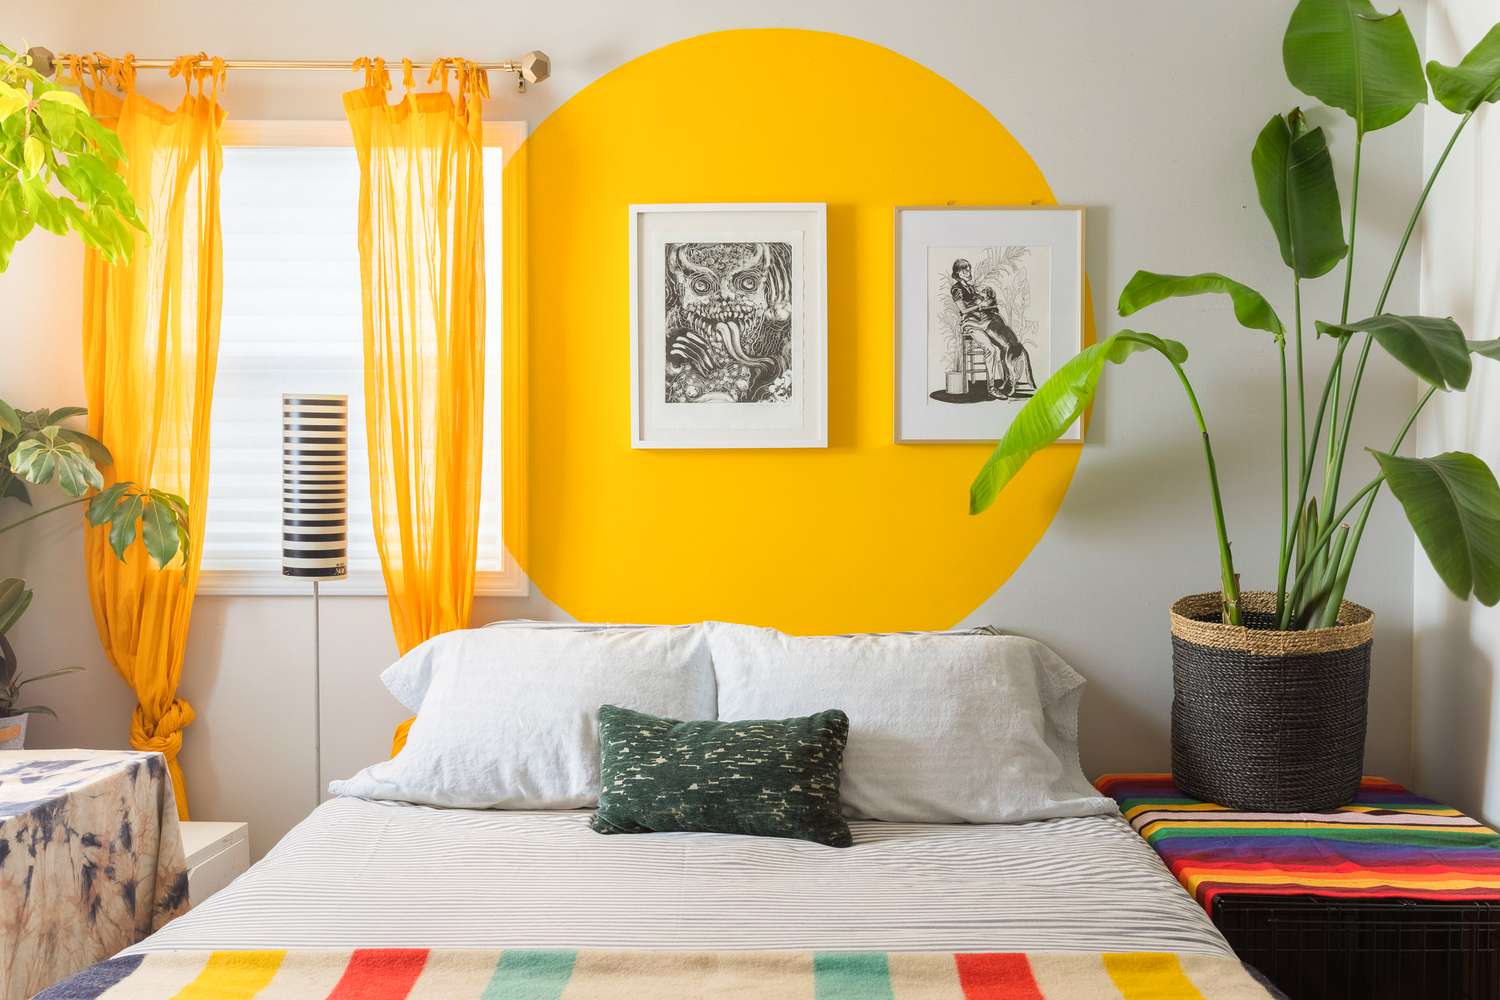 Quarto com círculo amarelo brilhante decorando a parede do fundo com duas obras de arte emolduradas